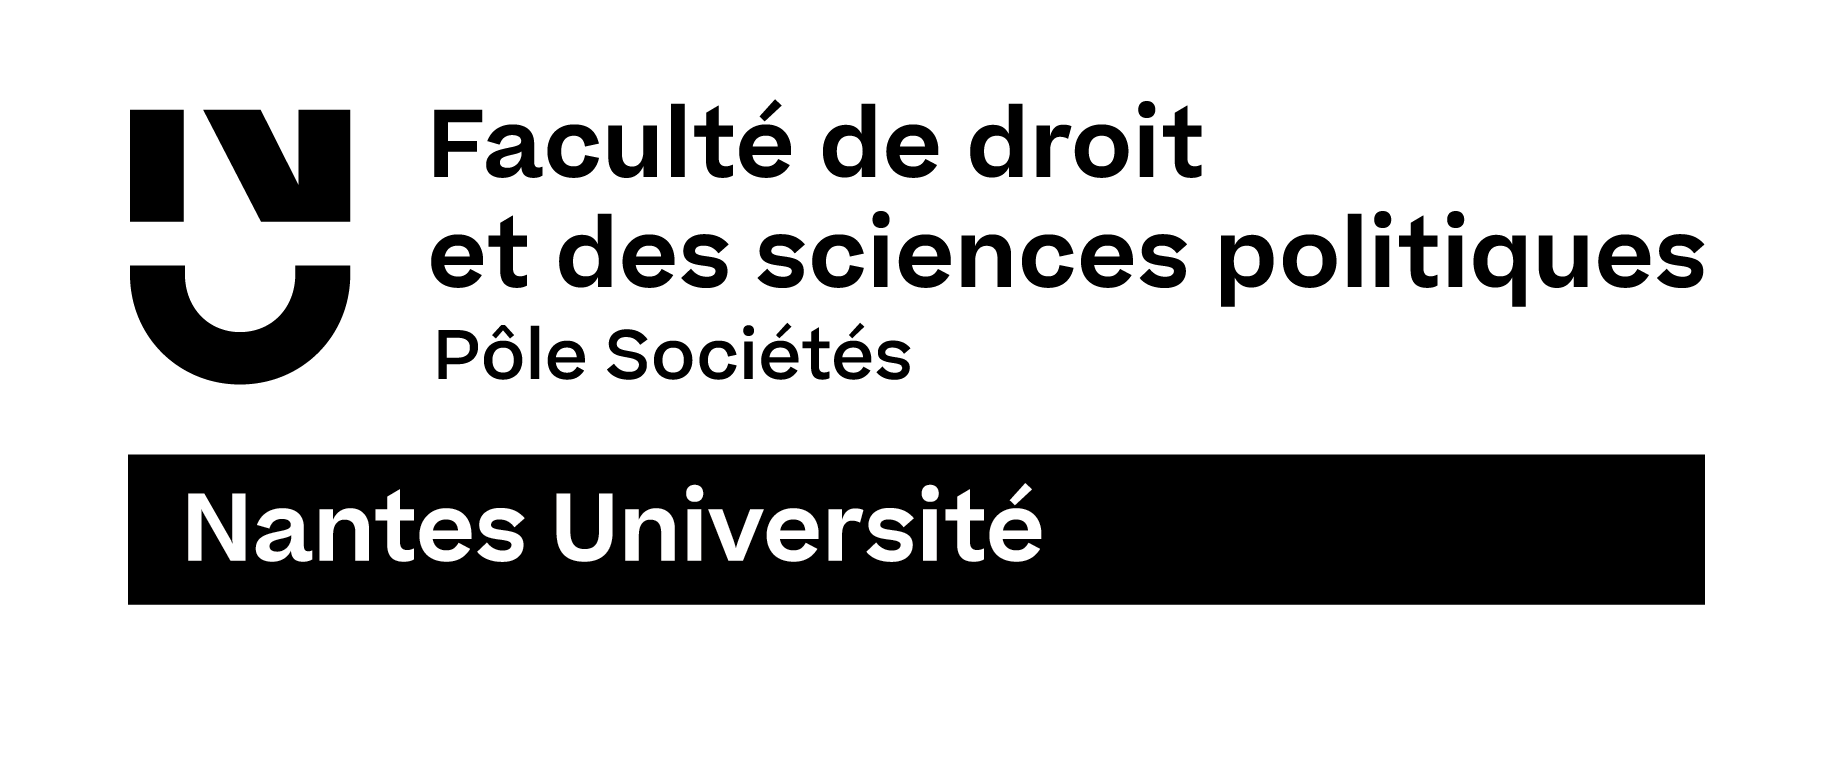 Faculté de Droit de Nantes - Nantes Université